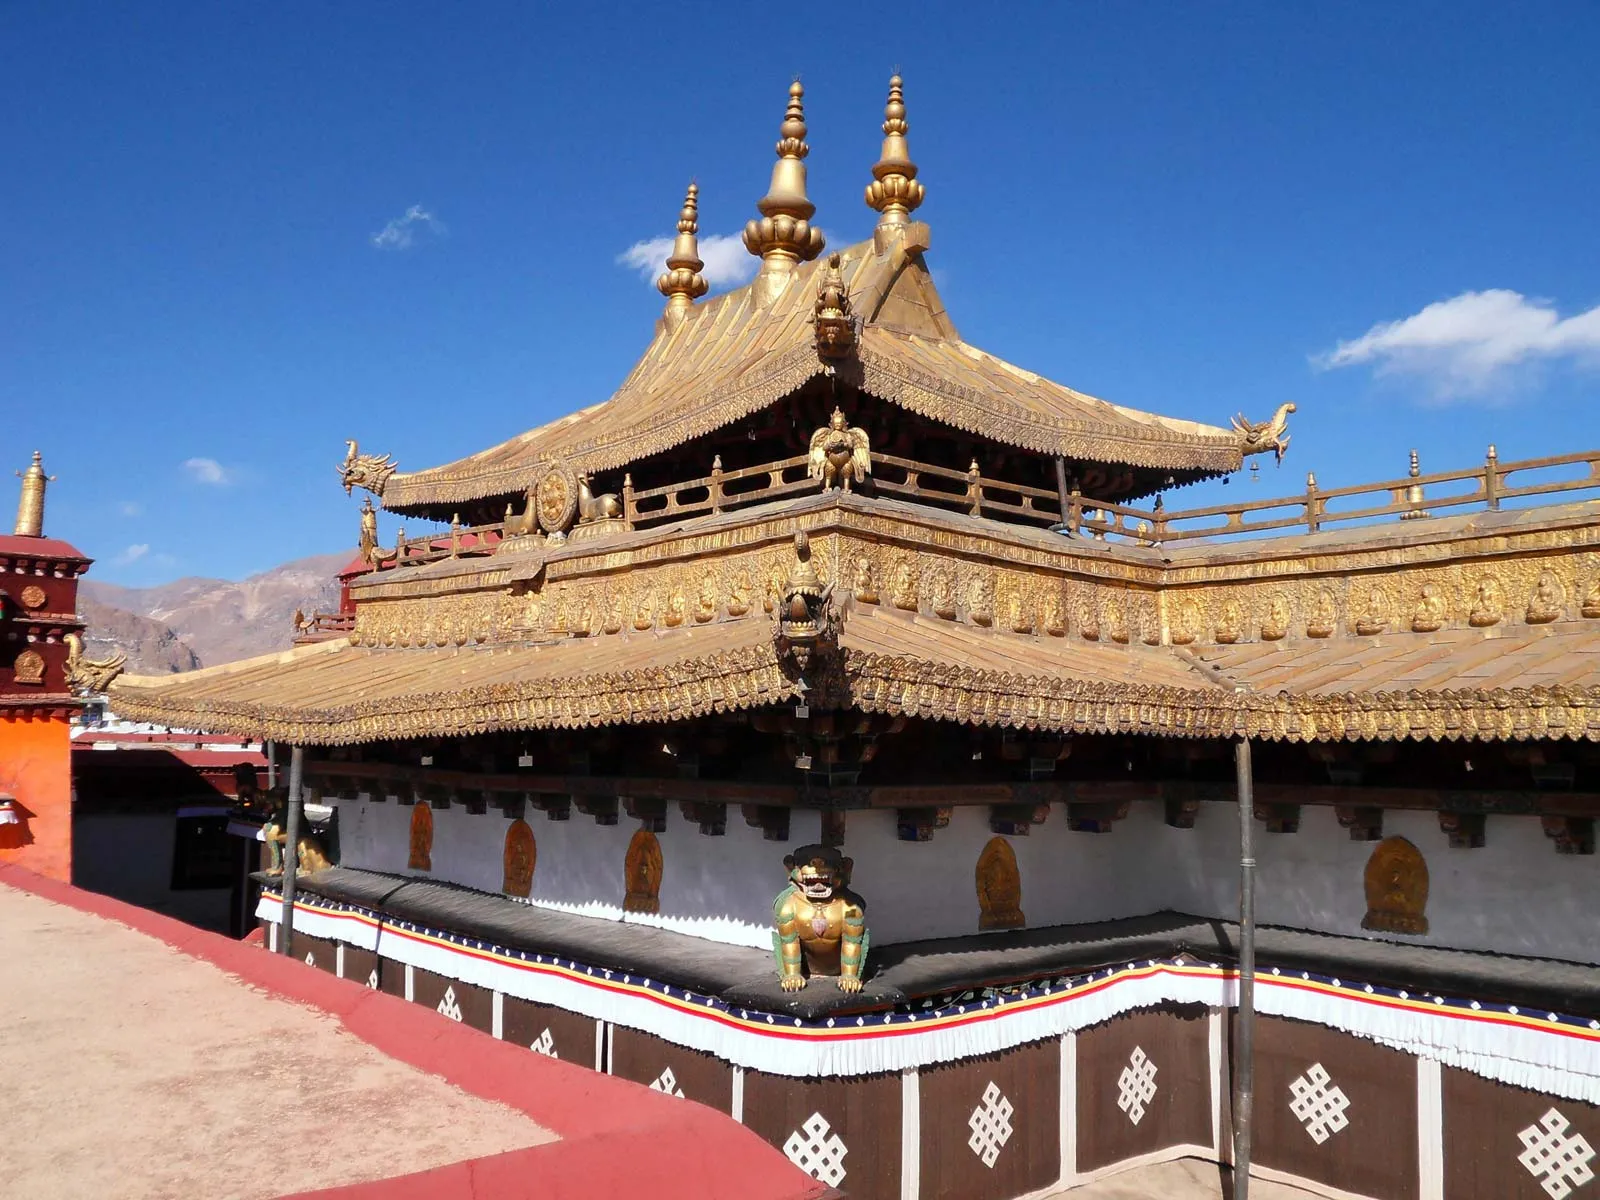 त्सुग्लाग्खांग मंदिर का इतिहास – History of tsuglagkhang temple